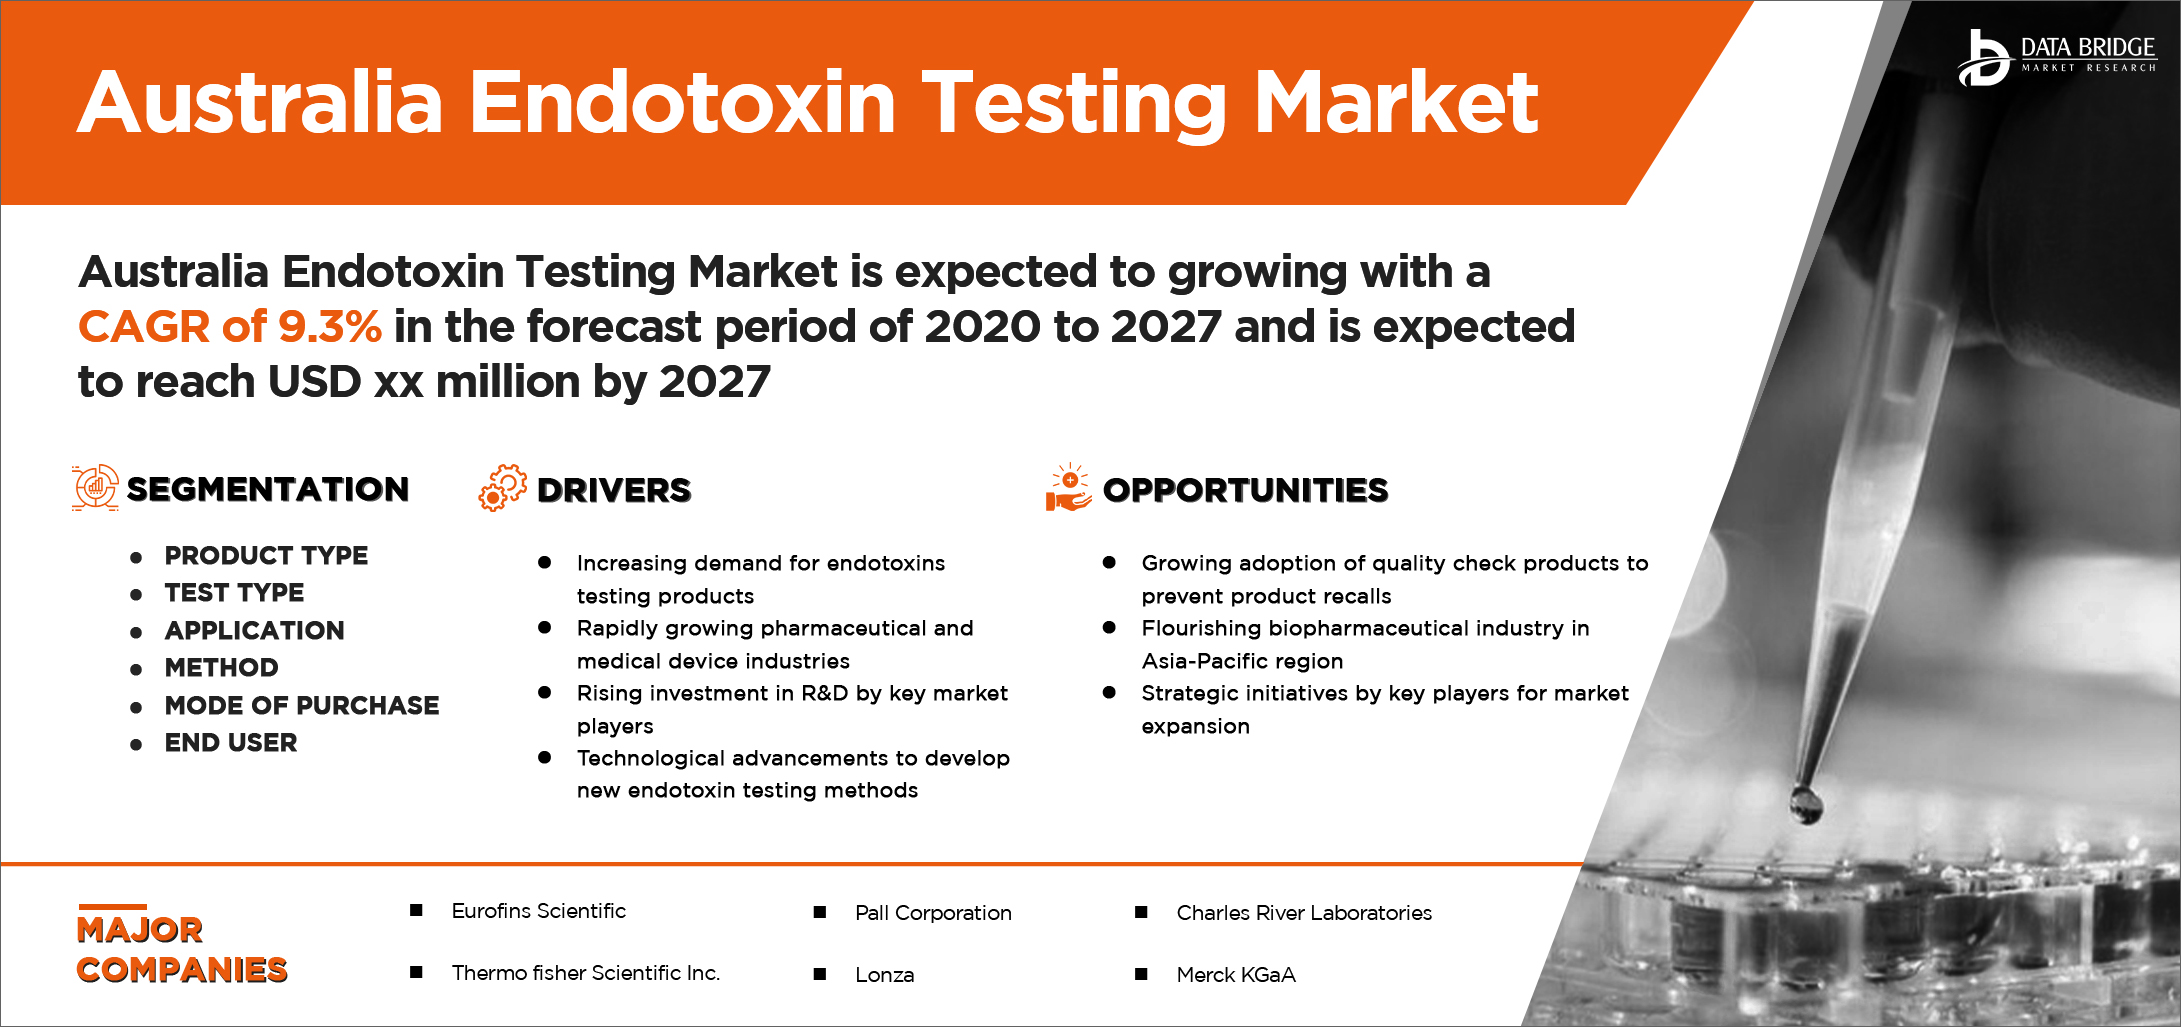 Australia Endotoxin Testing Market